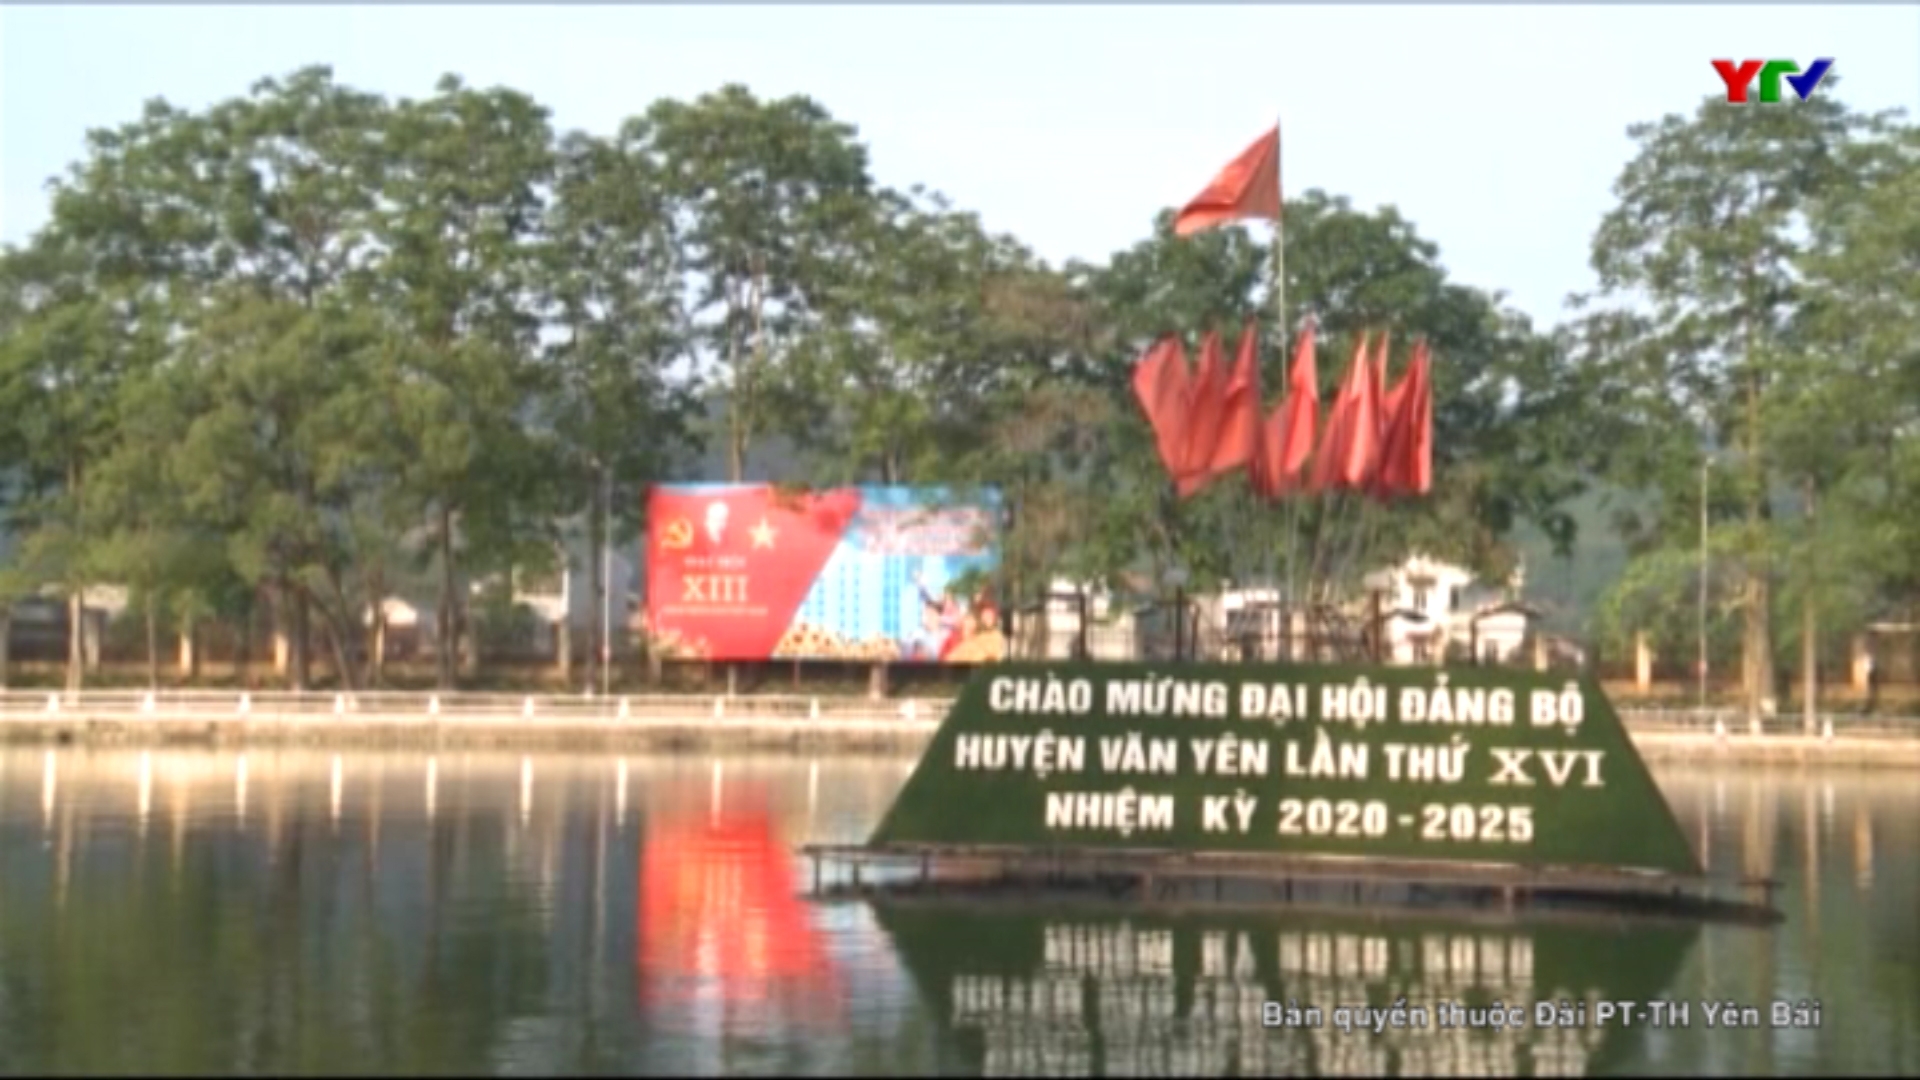 Sinh động những công trình chào mừng Đại hội Đảng bộ huyện Văn Yên nhiệm kỳ 2020-2025